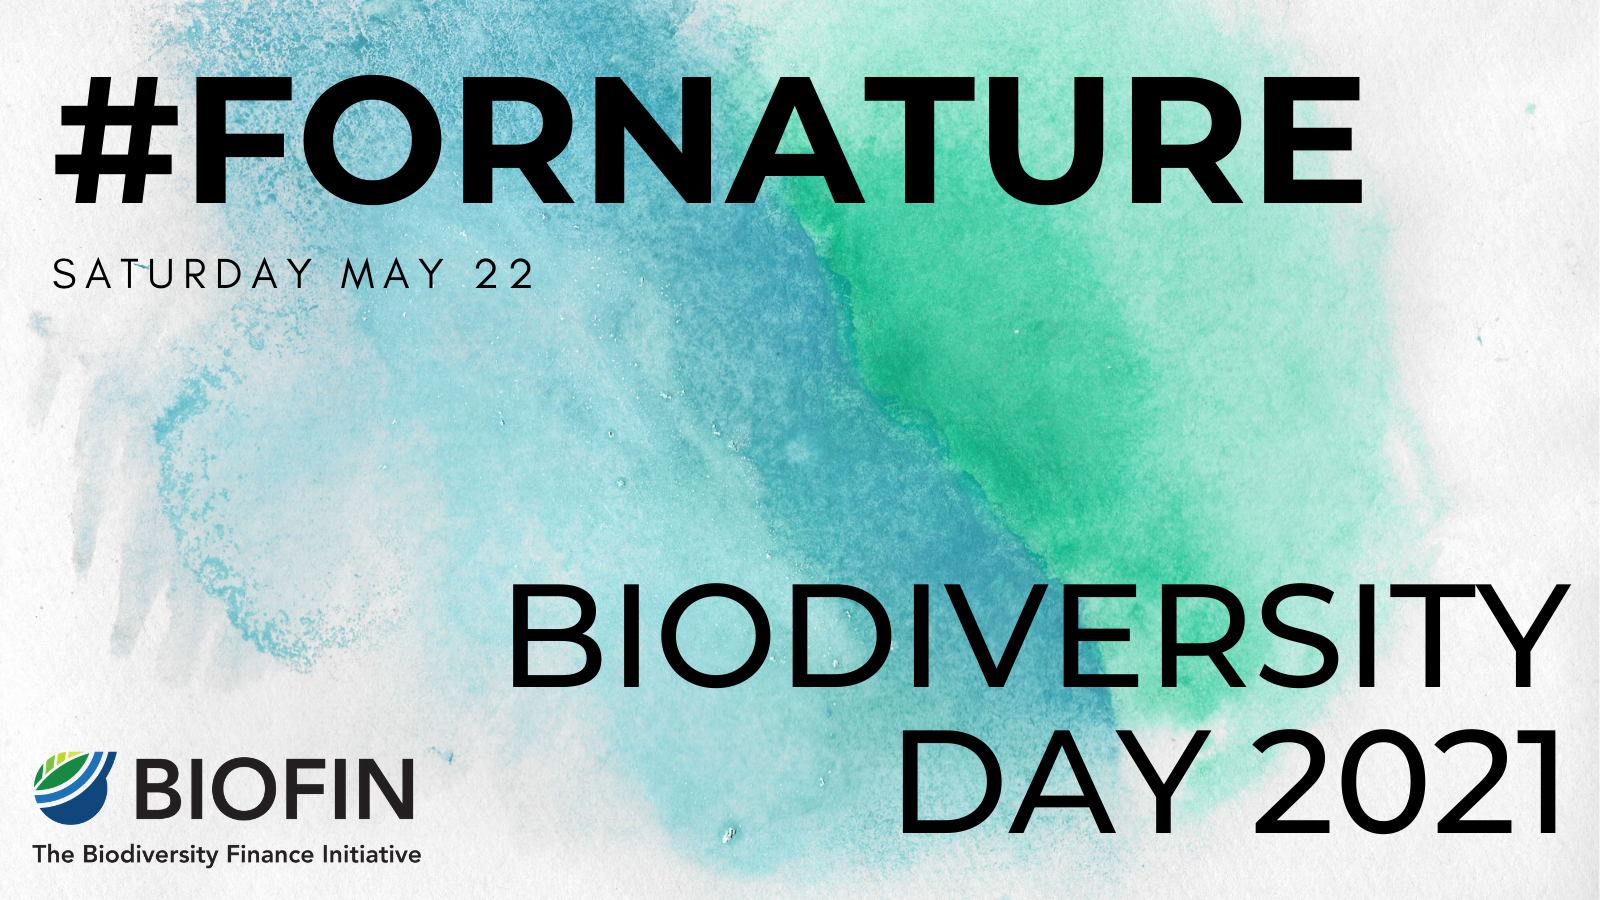 World Biodiversity Day